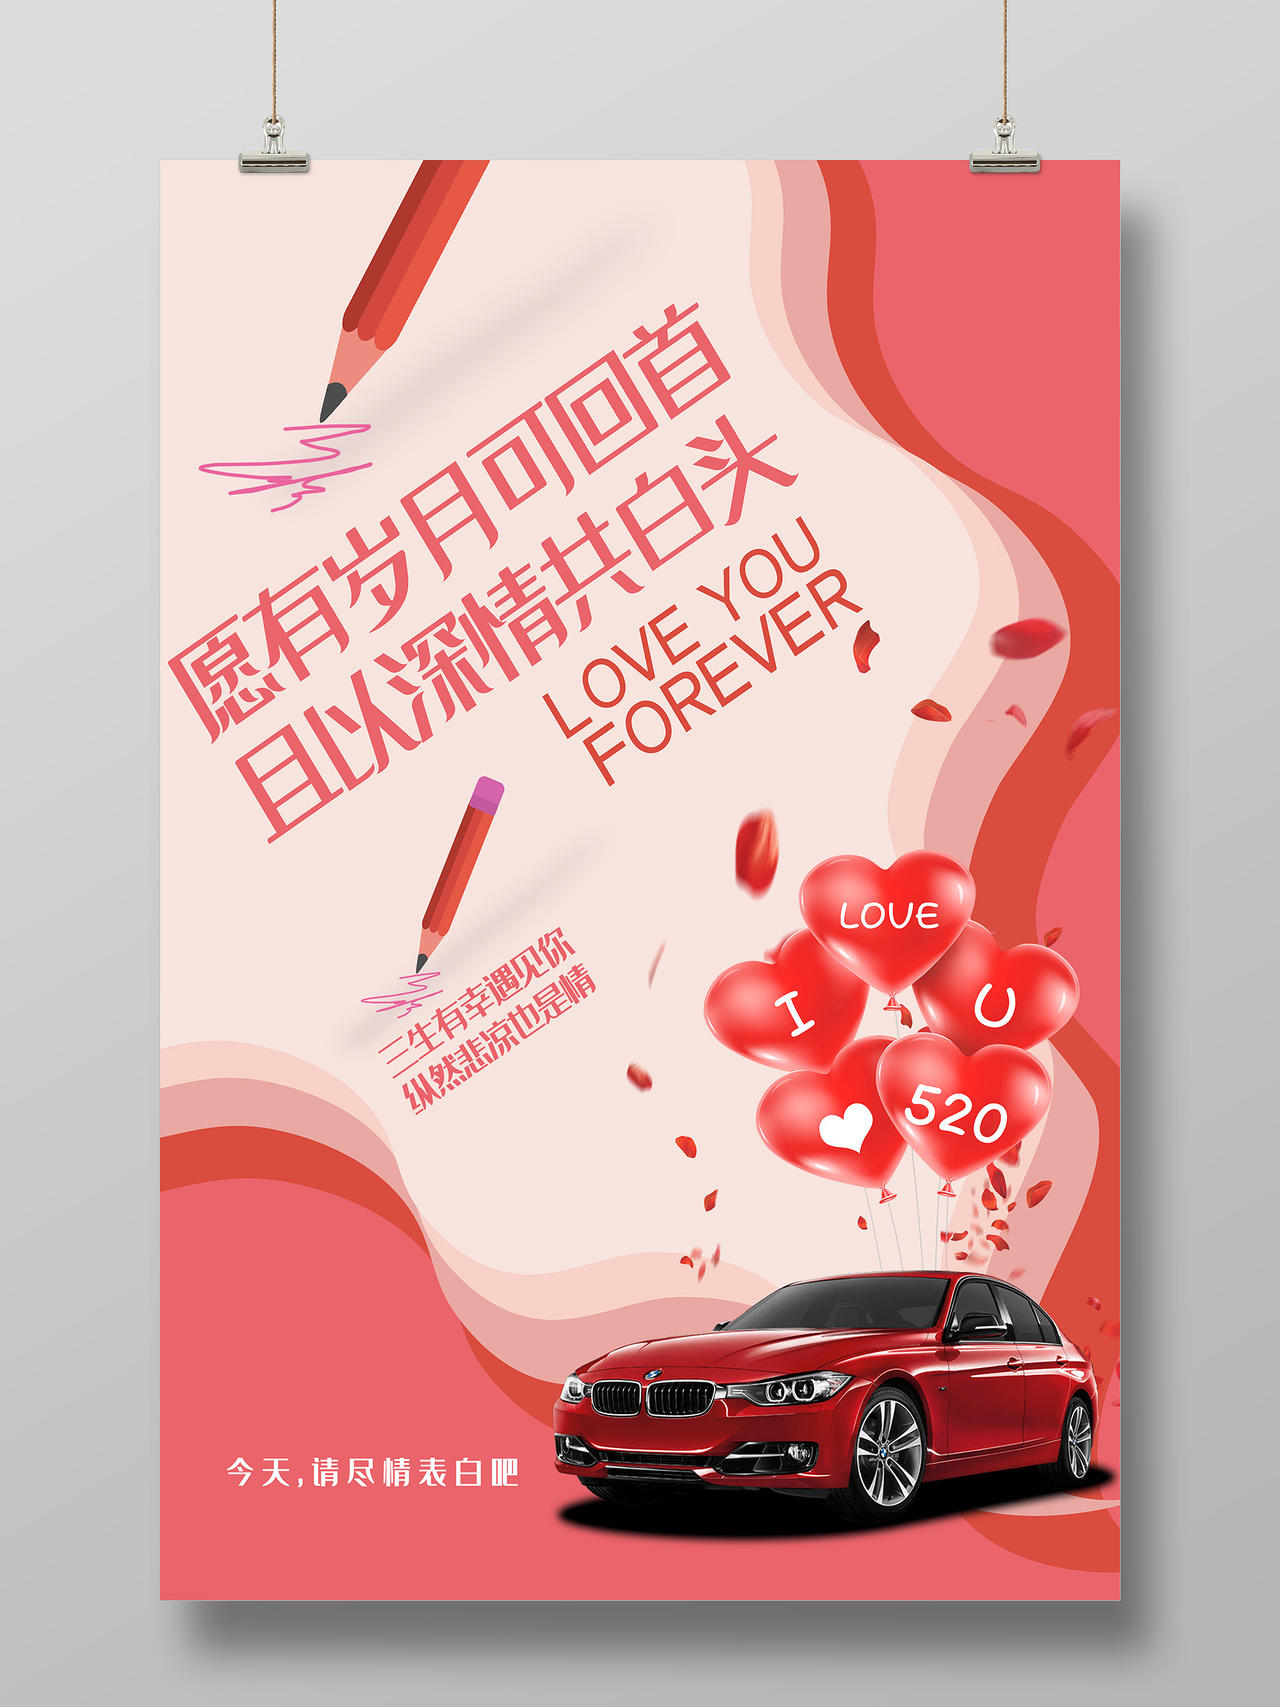 红色小清新愿有岁月可回首且以深情共白头520汽车活动海报